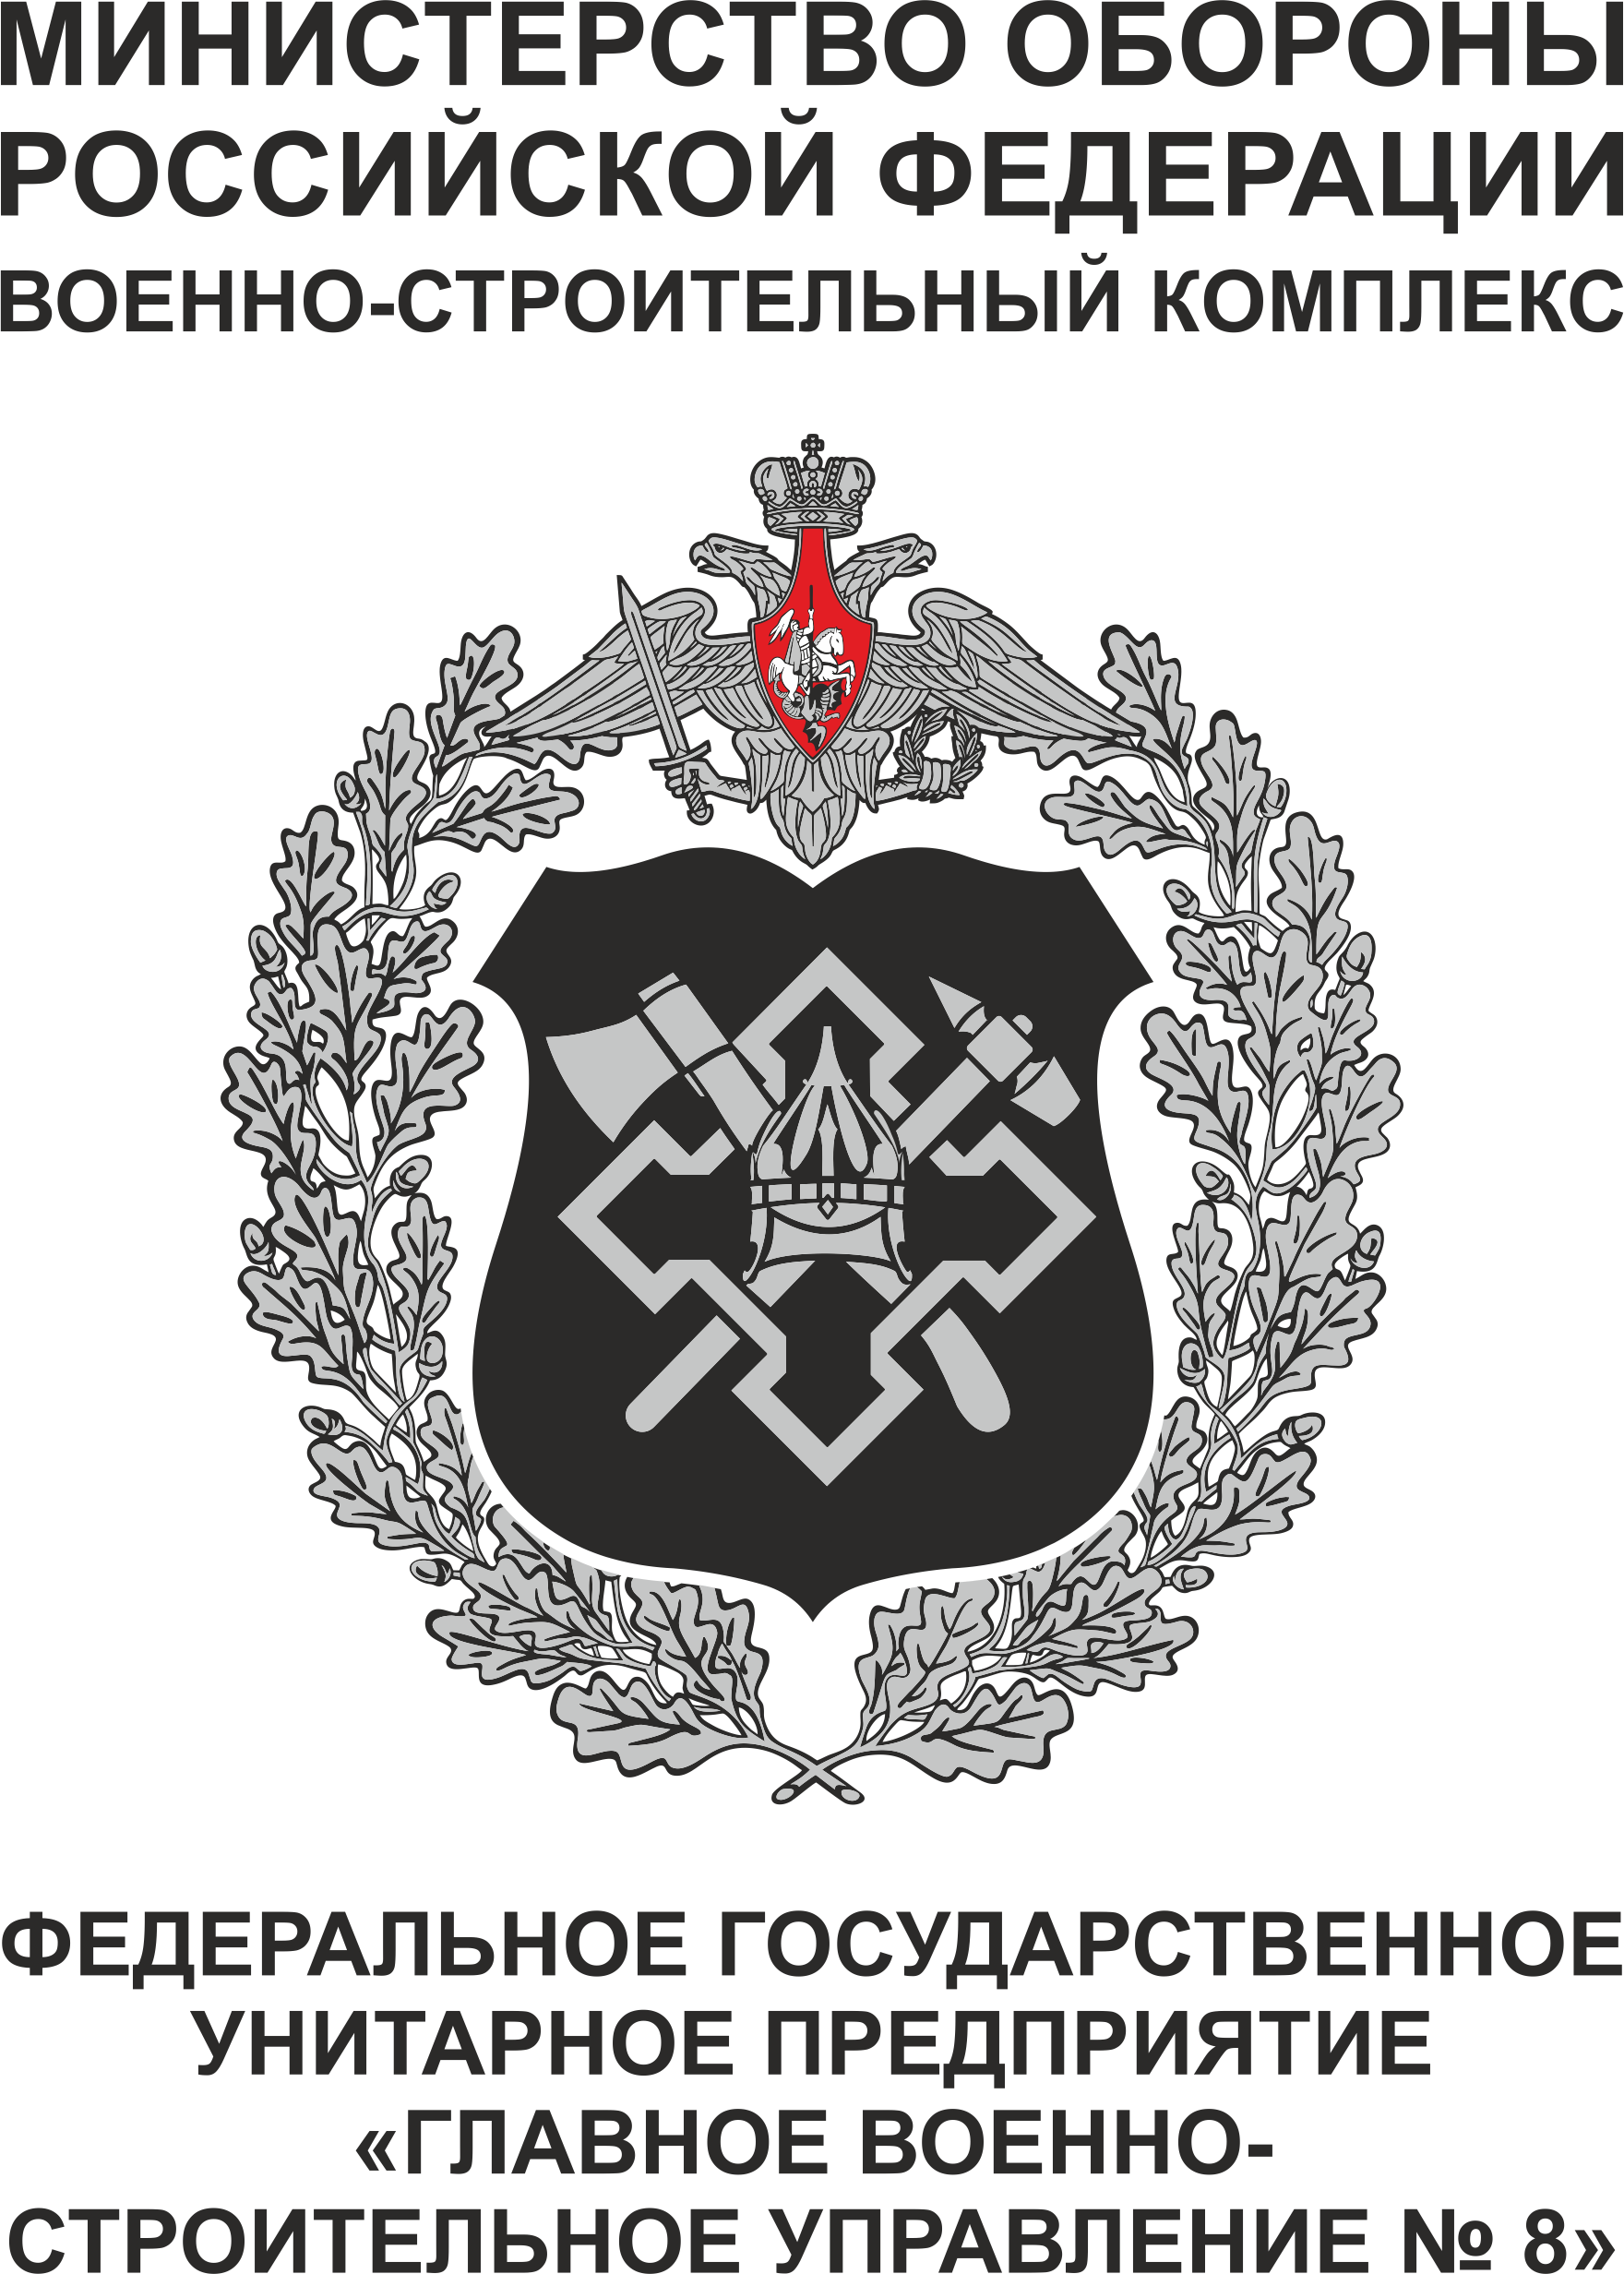 Главное военно-строительное управление № 8. логотип